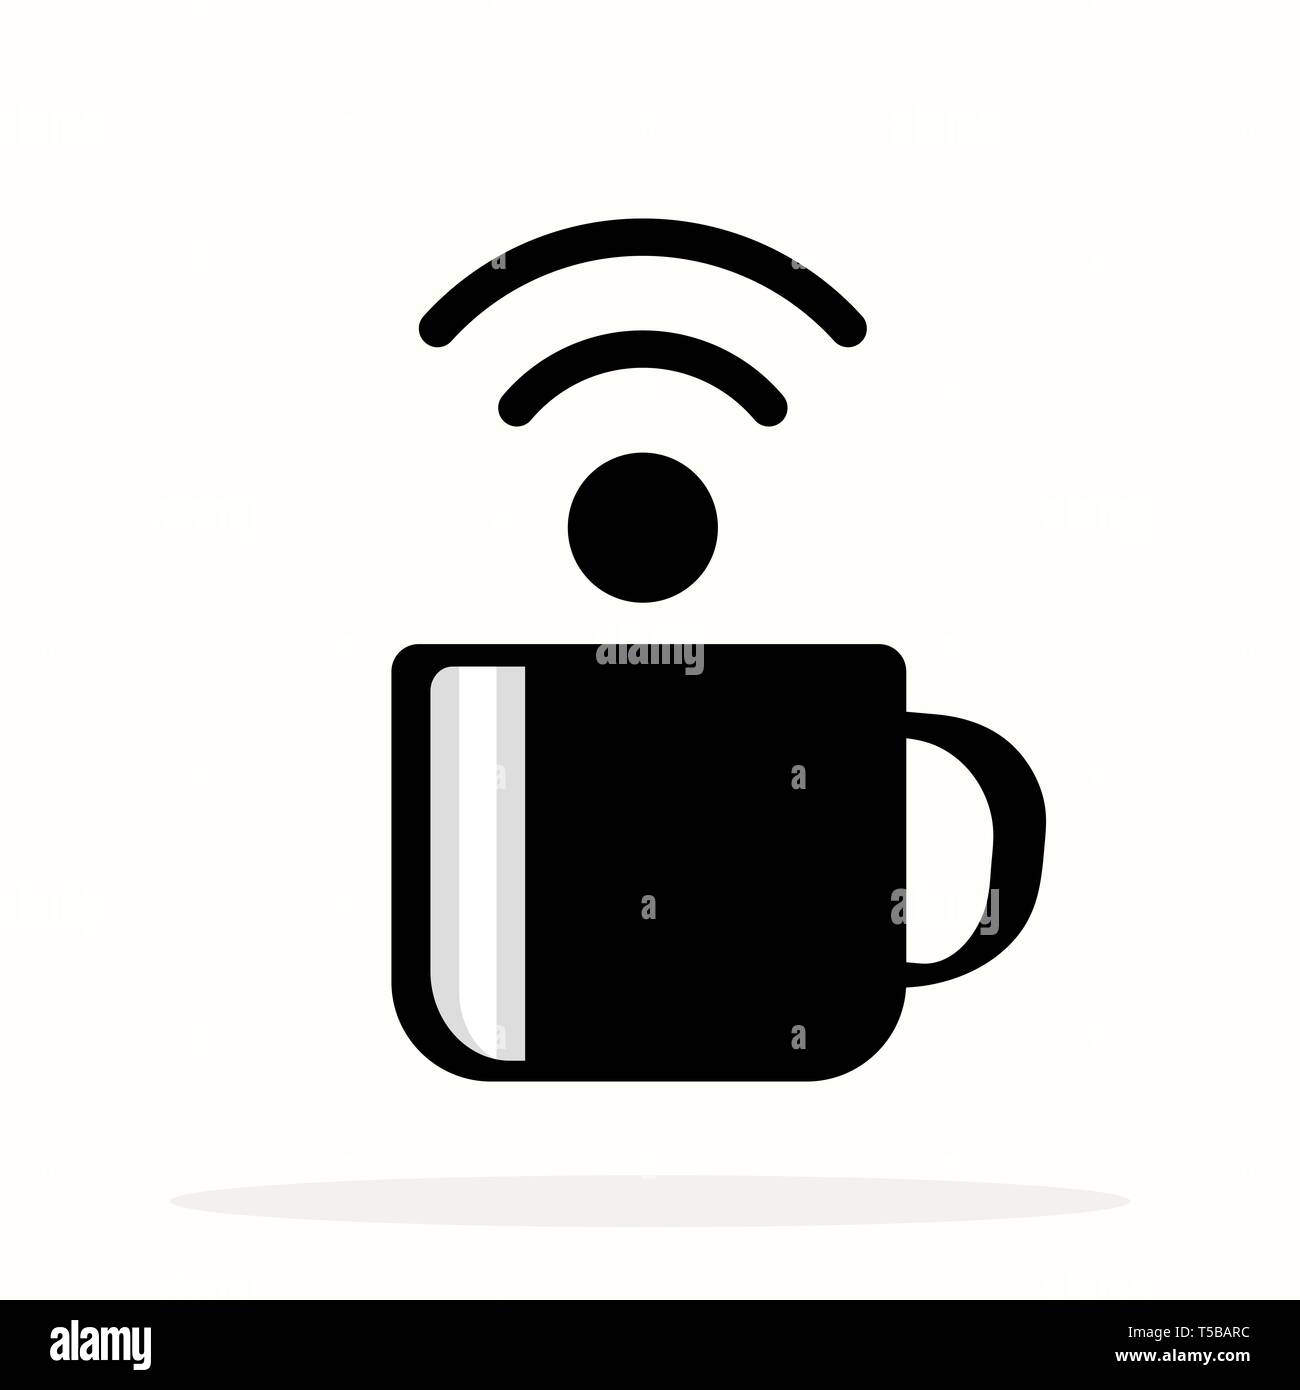 Poster avec tasse de café et le texte WiFi gratuit pour street cafe.  Inscrivez-vous gratuitement espace wifi signe sur une tasse de café.  Illustration vecteur eps10 Image Vectorielle Stock - Alamy